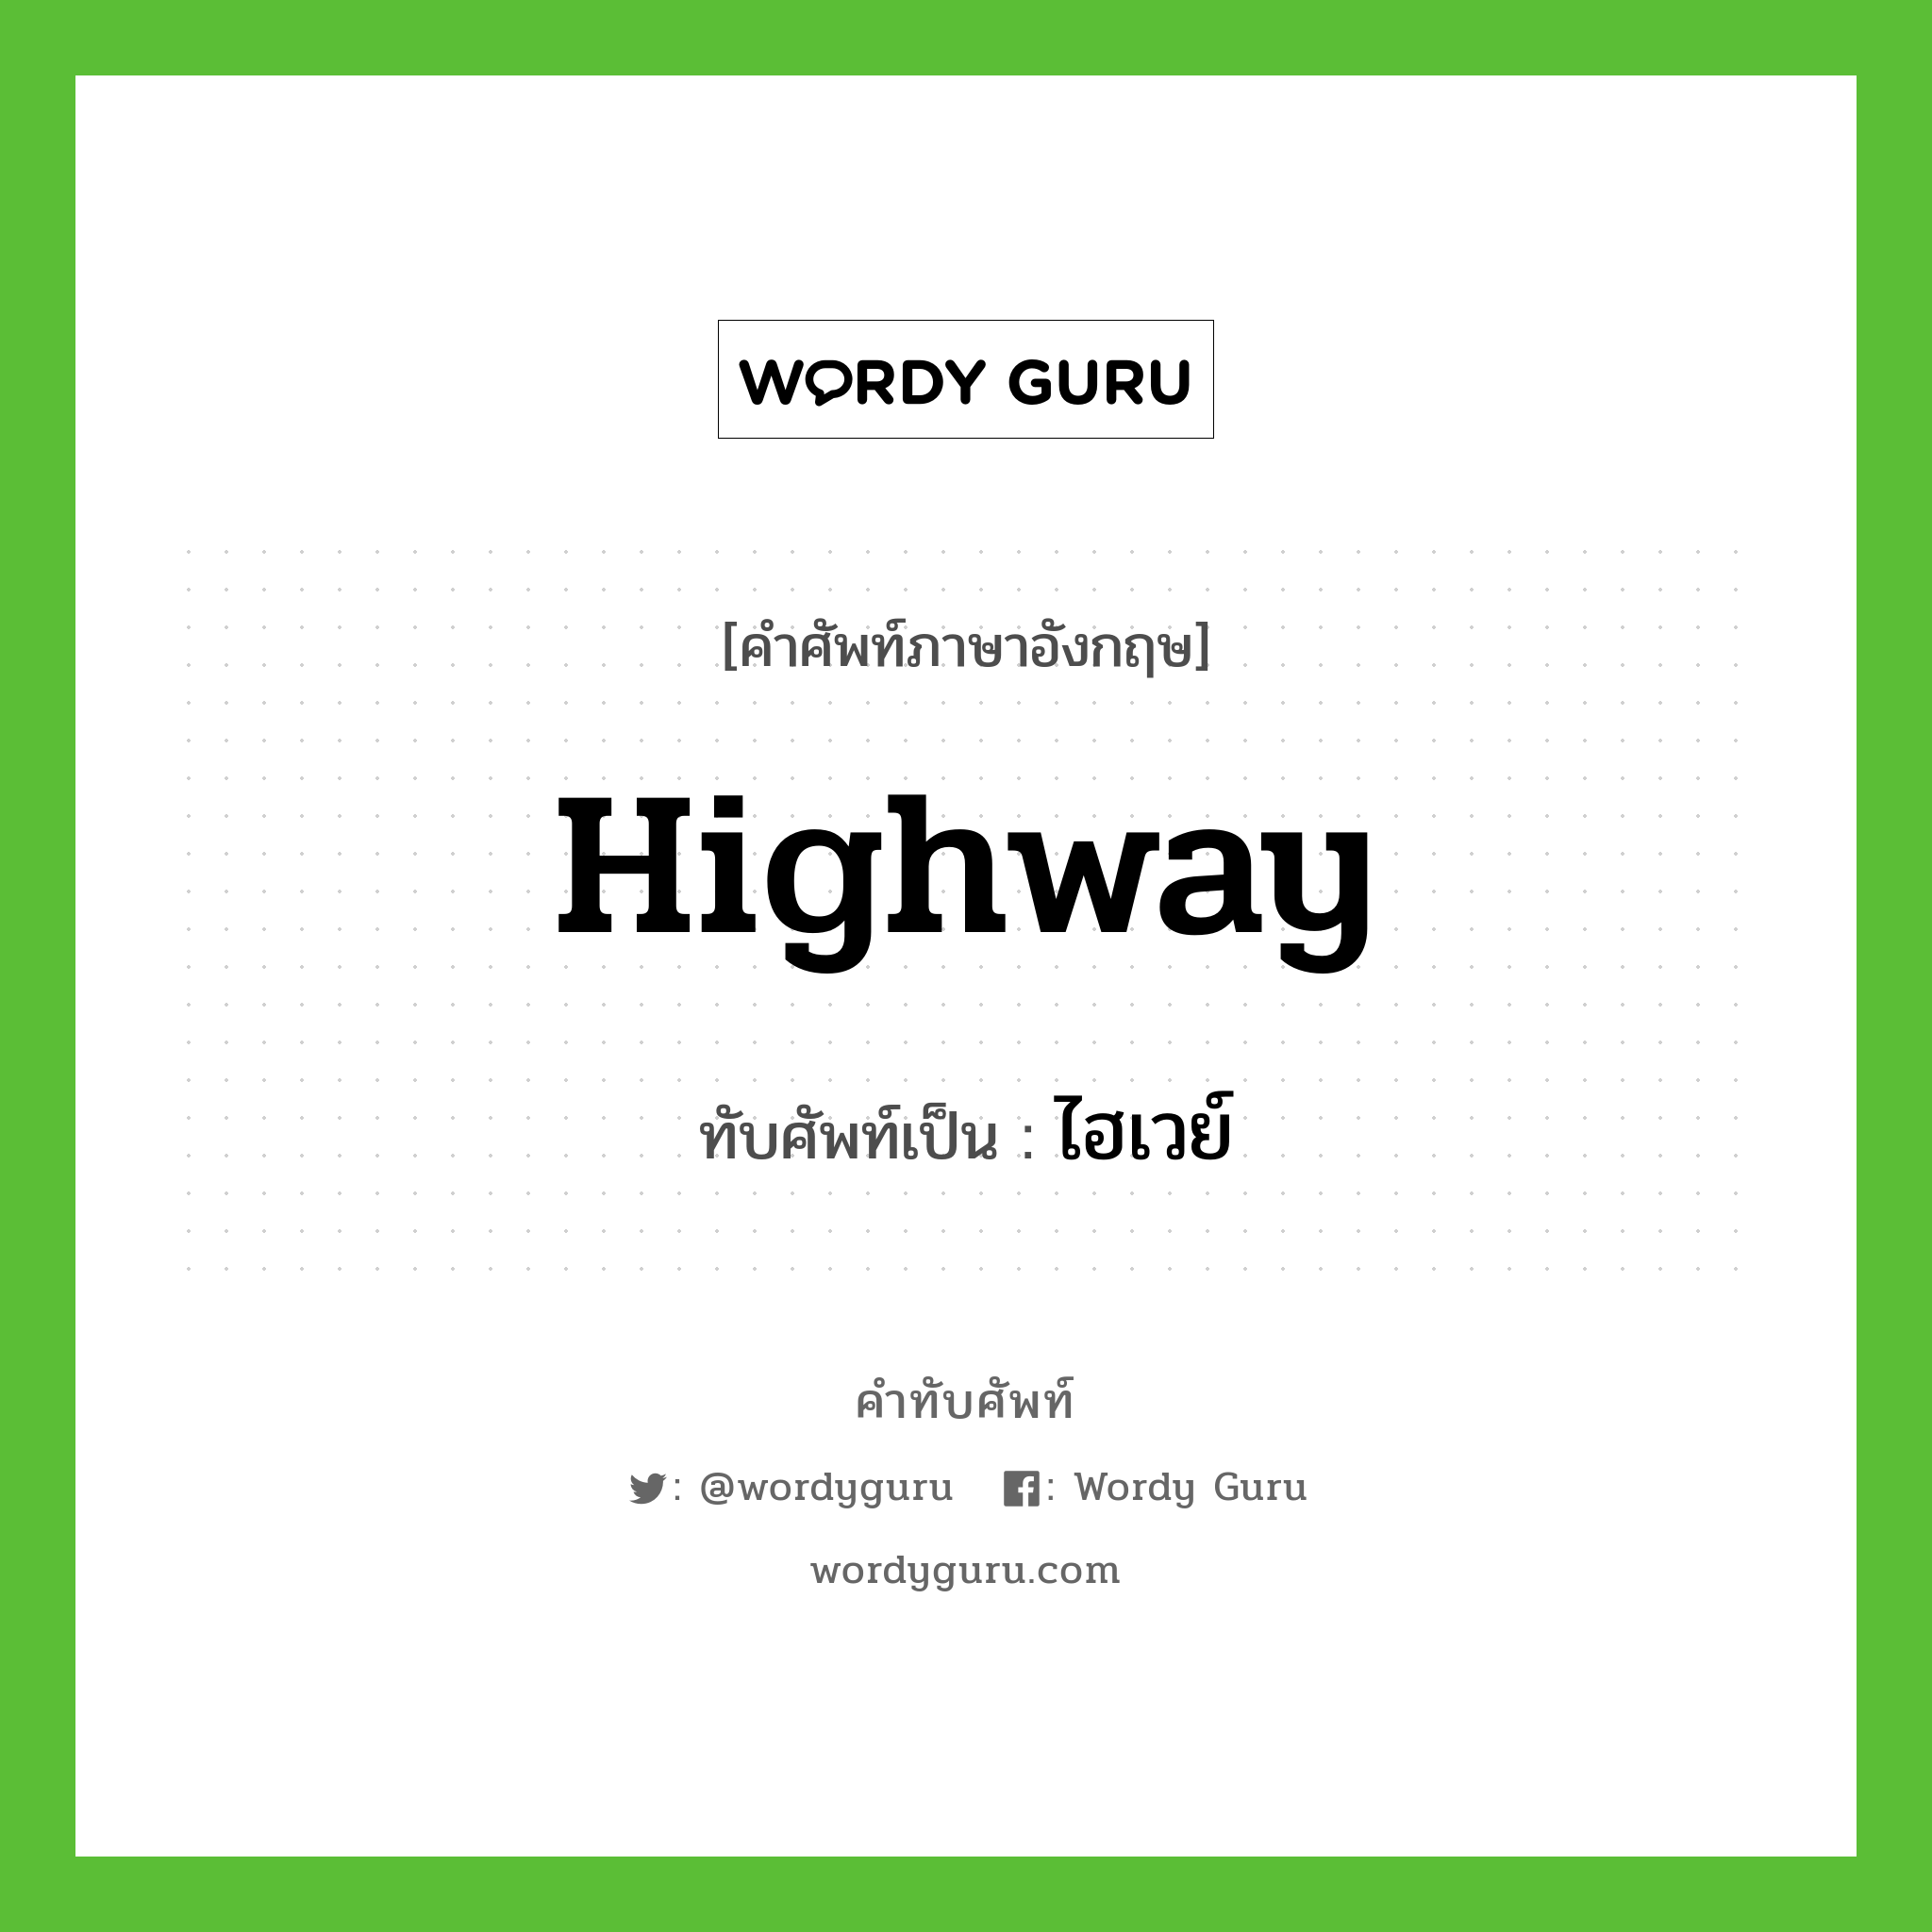 highway เขียนเป็นคำไทยว่าอะไร?, คำศัพท์ภาษาอังกฤษ highway ทับศัพท์เป็น ไฮเวย์